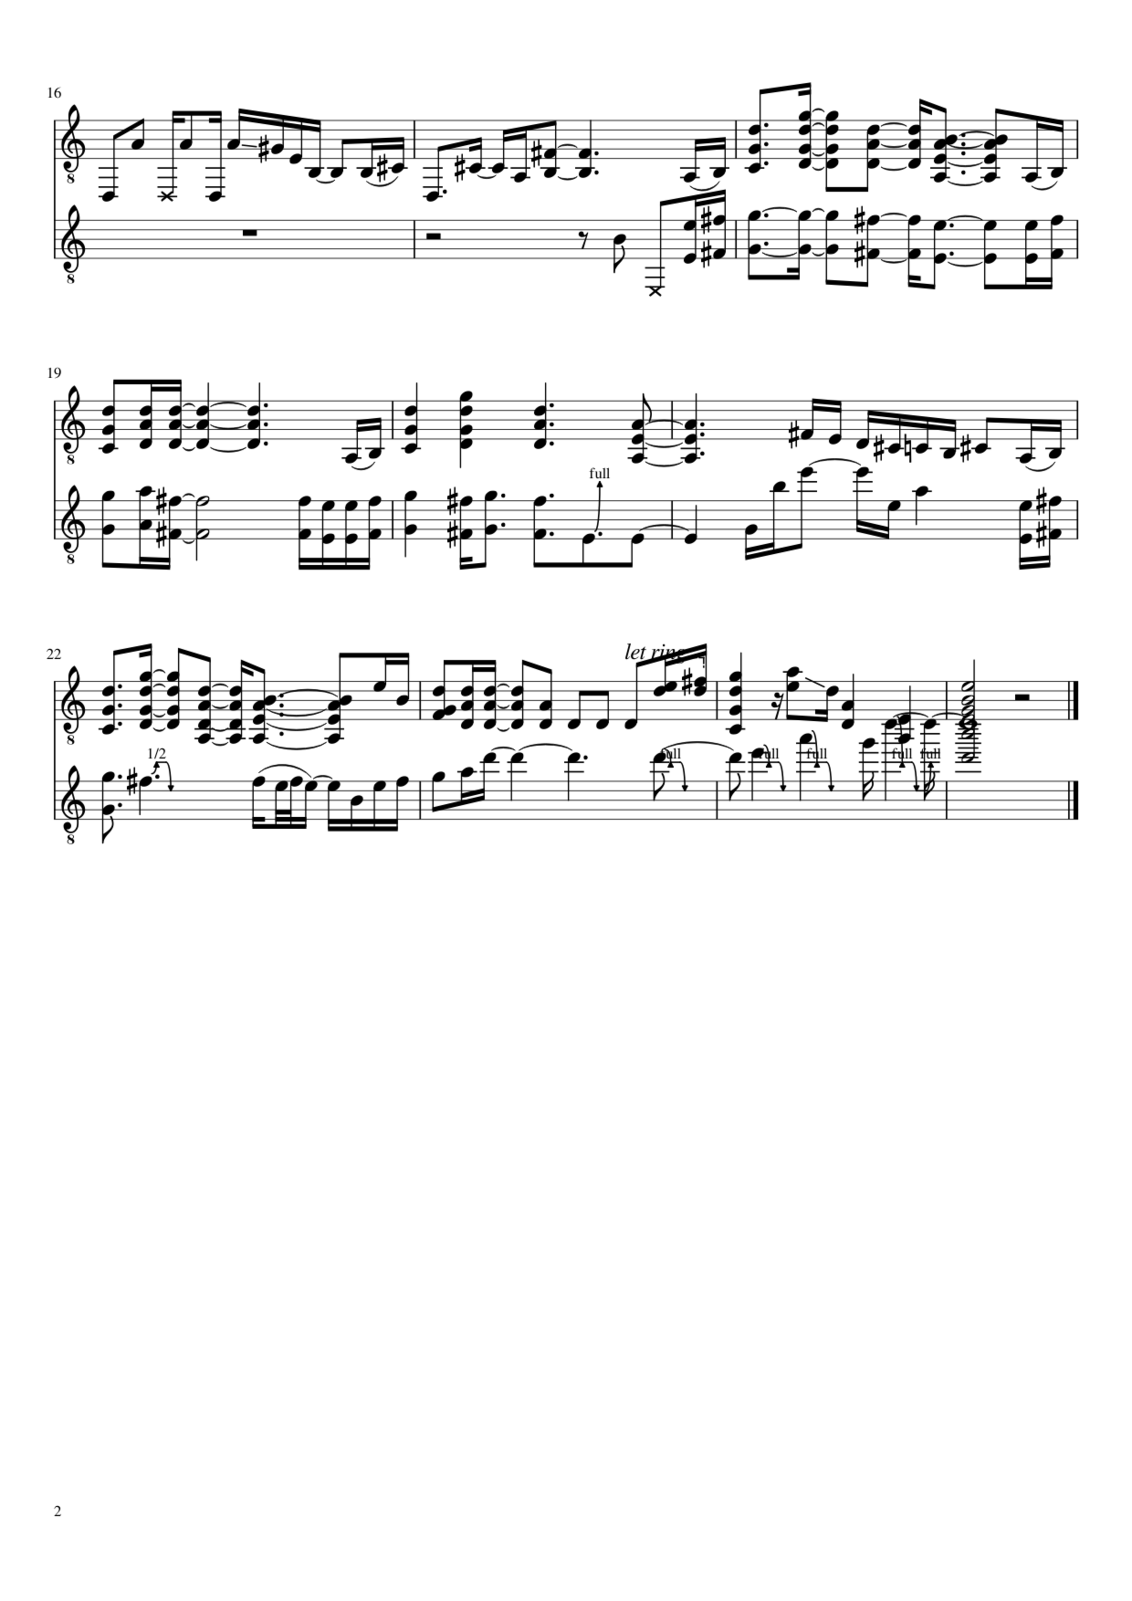 Baluchitherium slide, Image 2